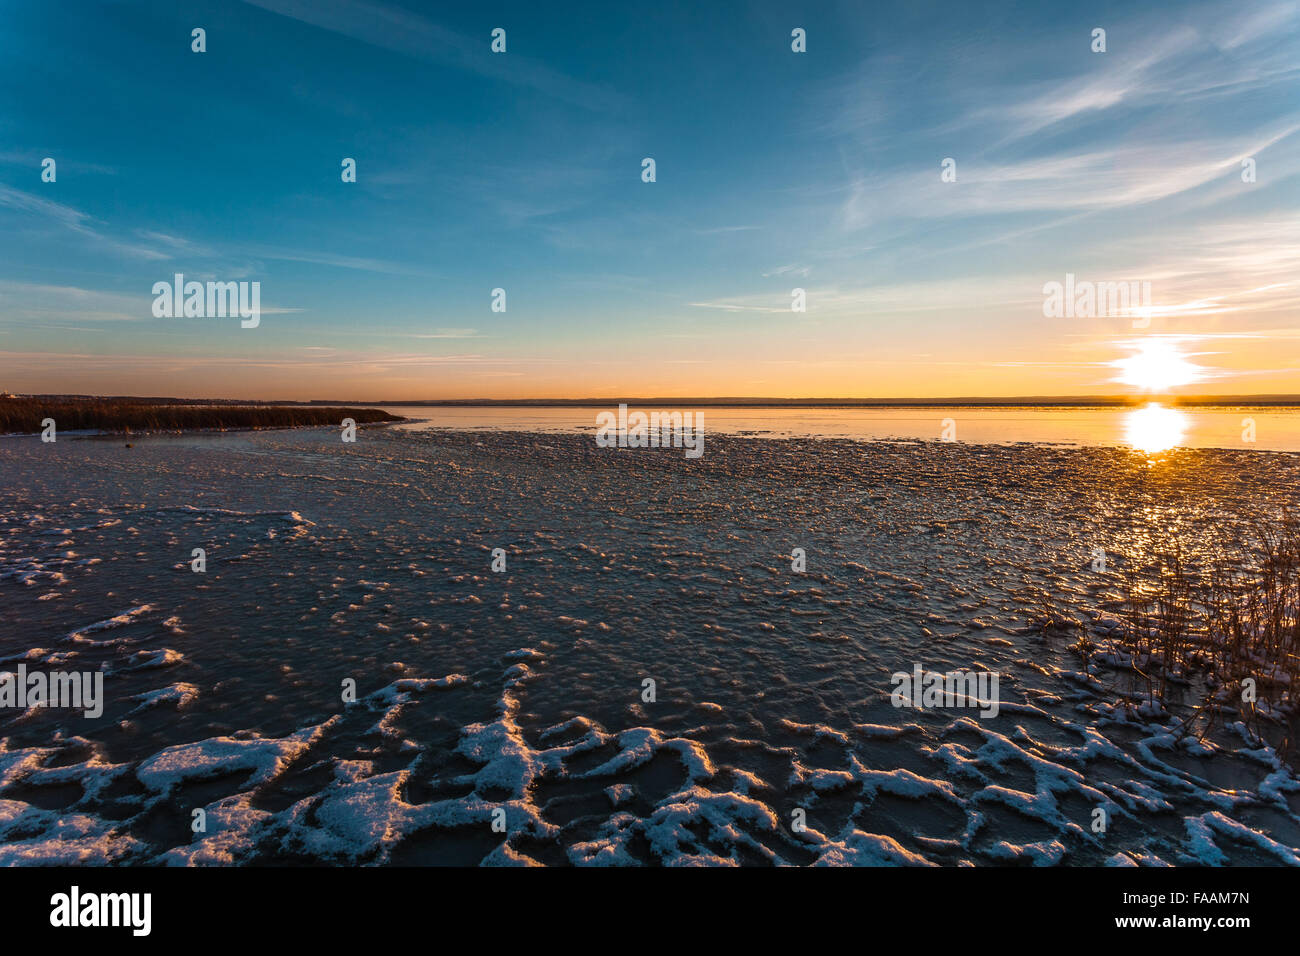 Die Sonne geht am Horizont auf der Winter-Küste, von Wasser und Eis reflektiert wird. Stockfoto